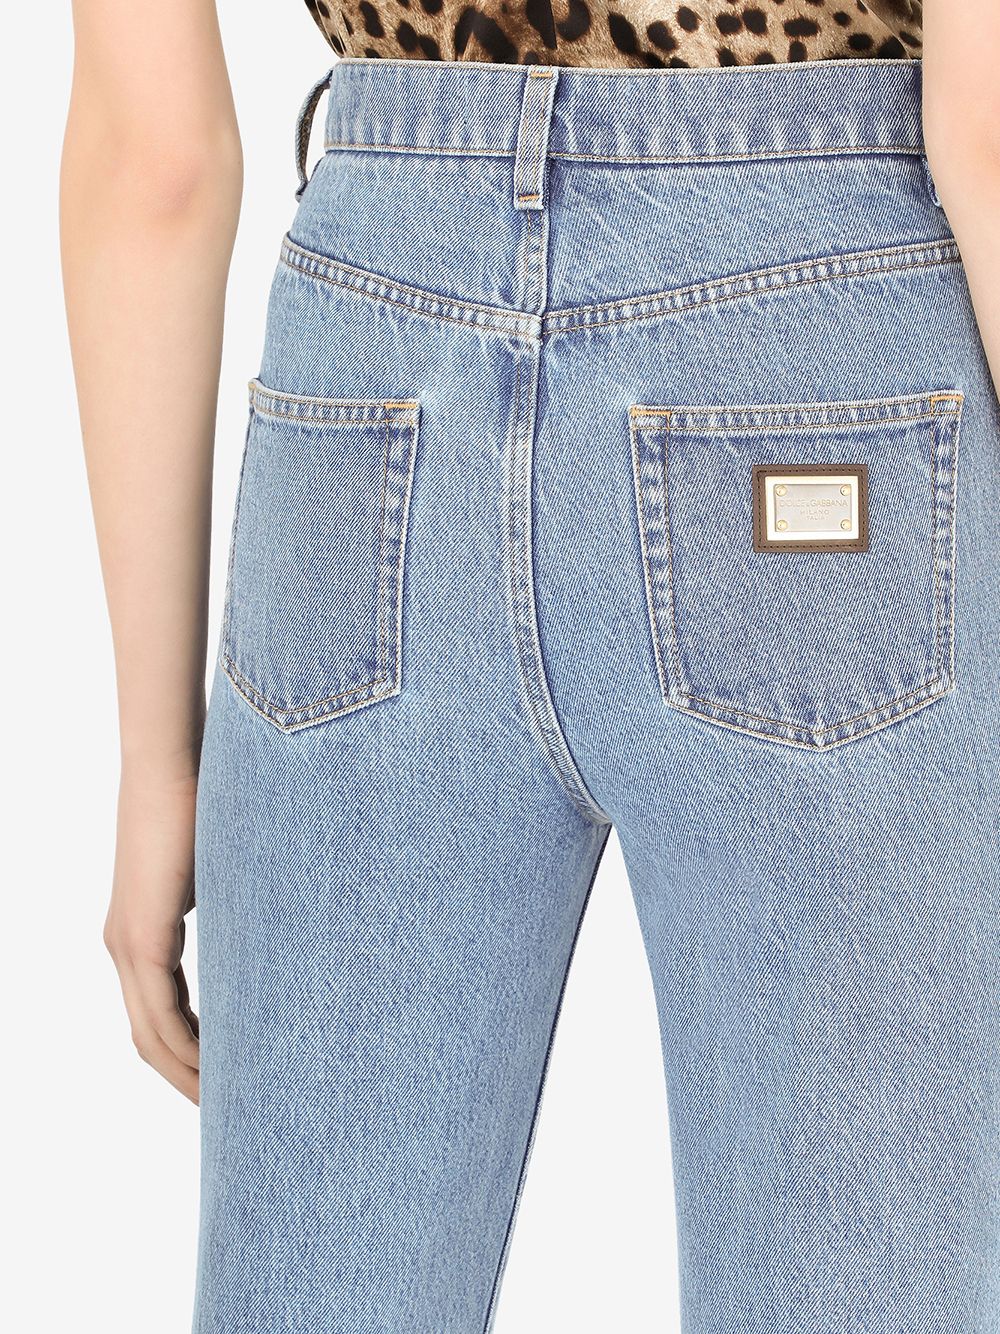 фото Dolce & gabbana укороченные джинсы с эффектом потертости